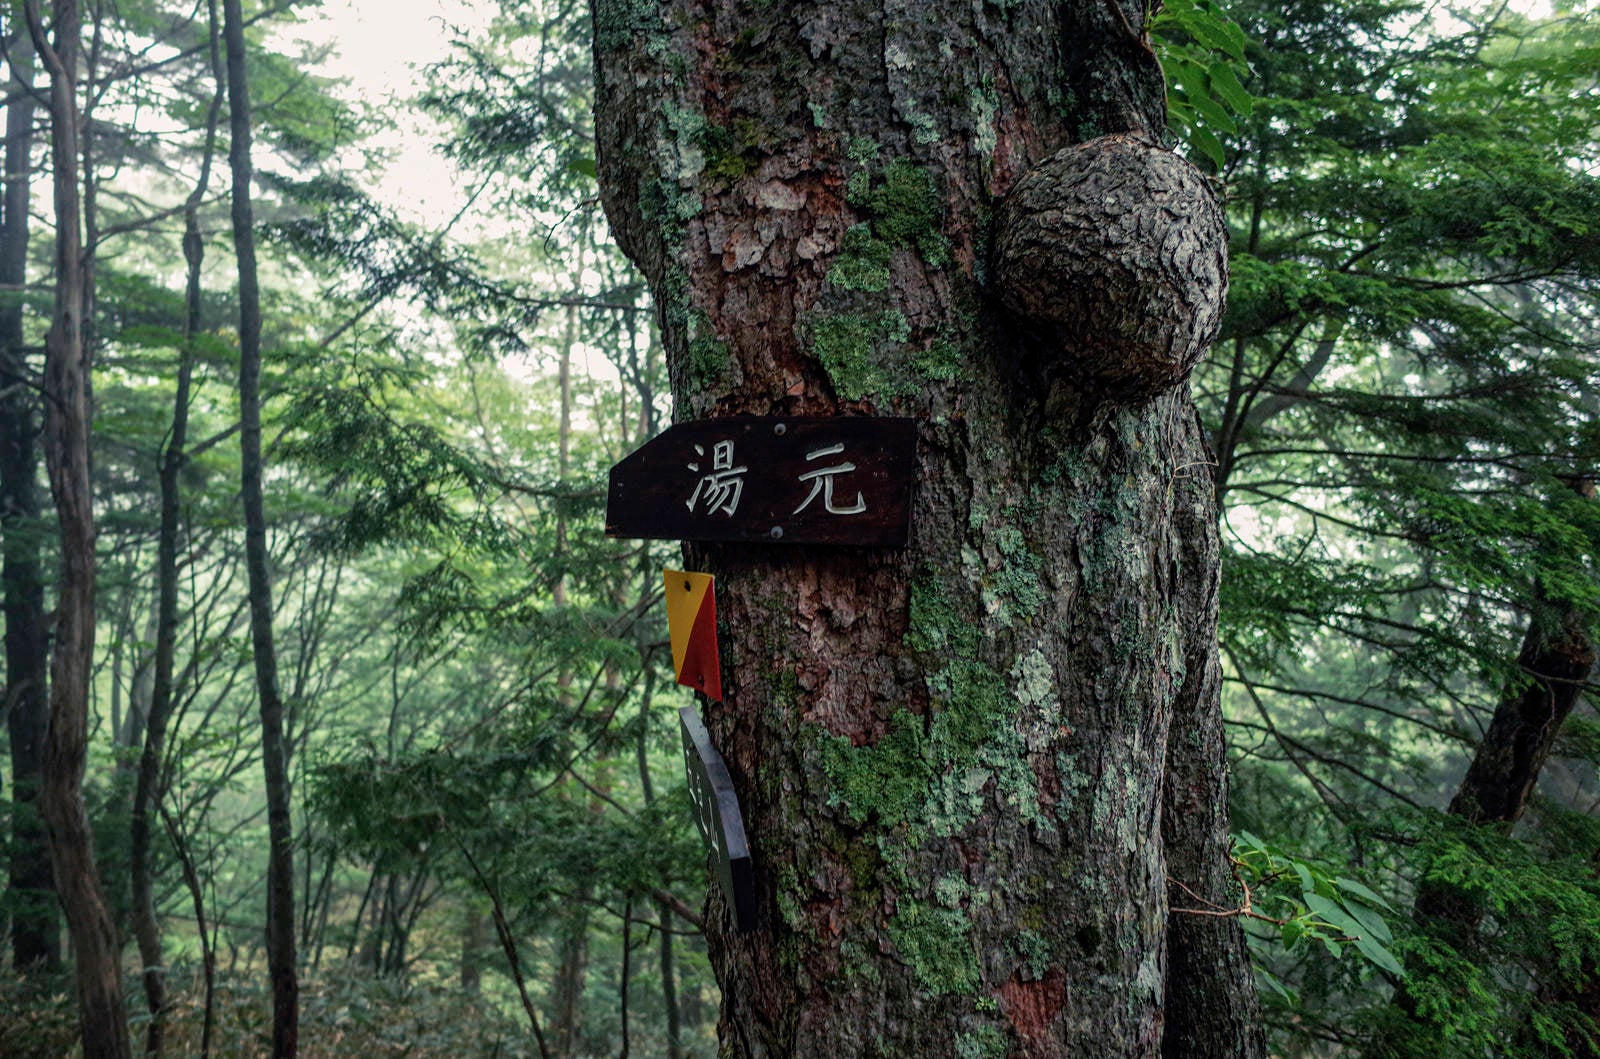 「湯元温泉へいざなう指導標」の写真